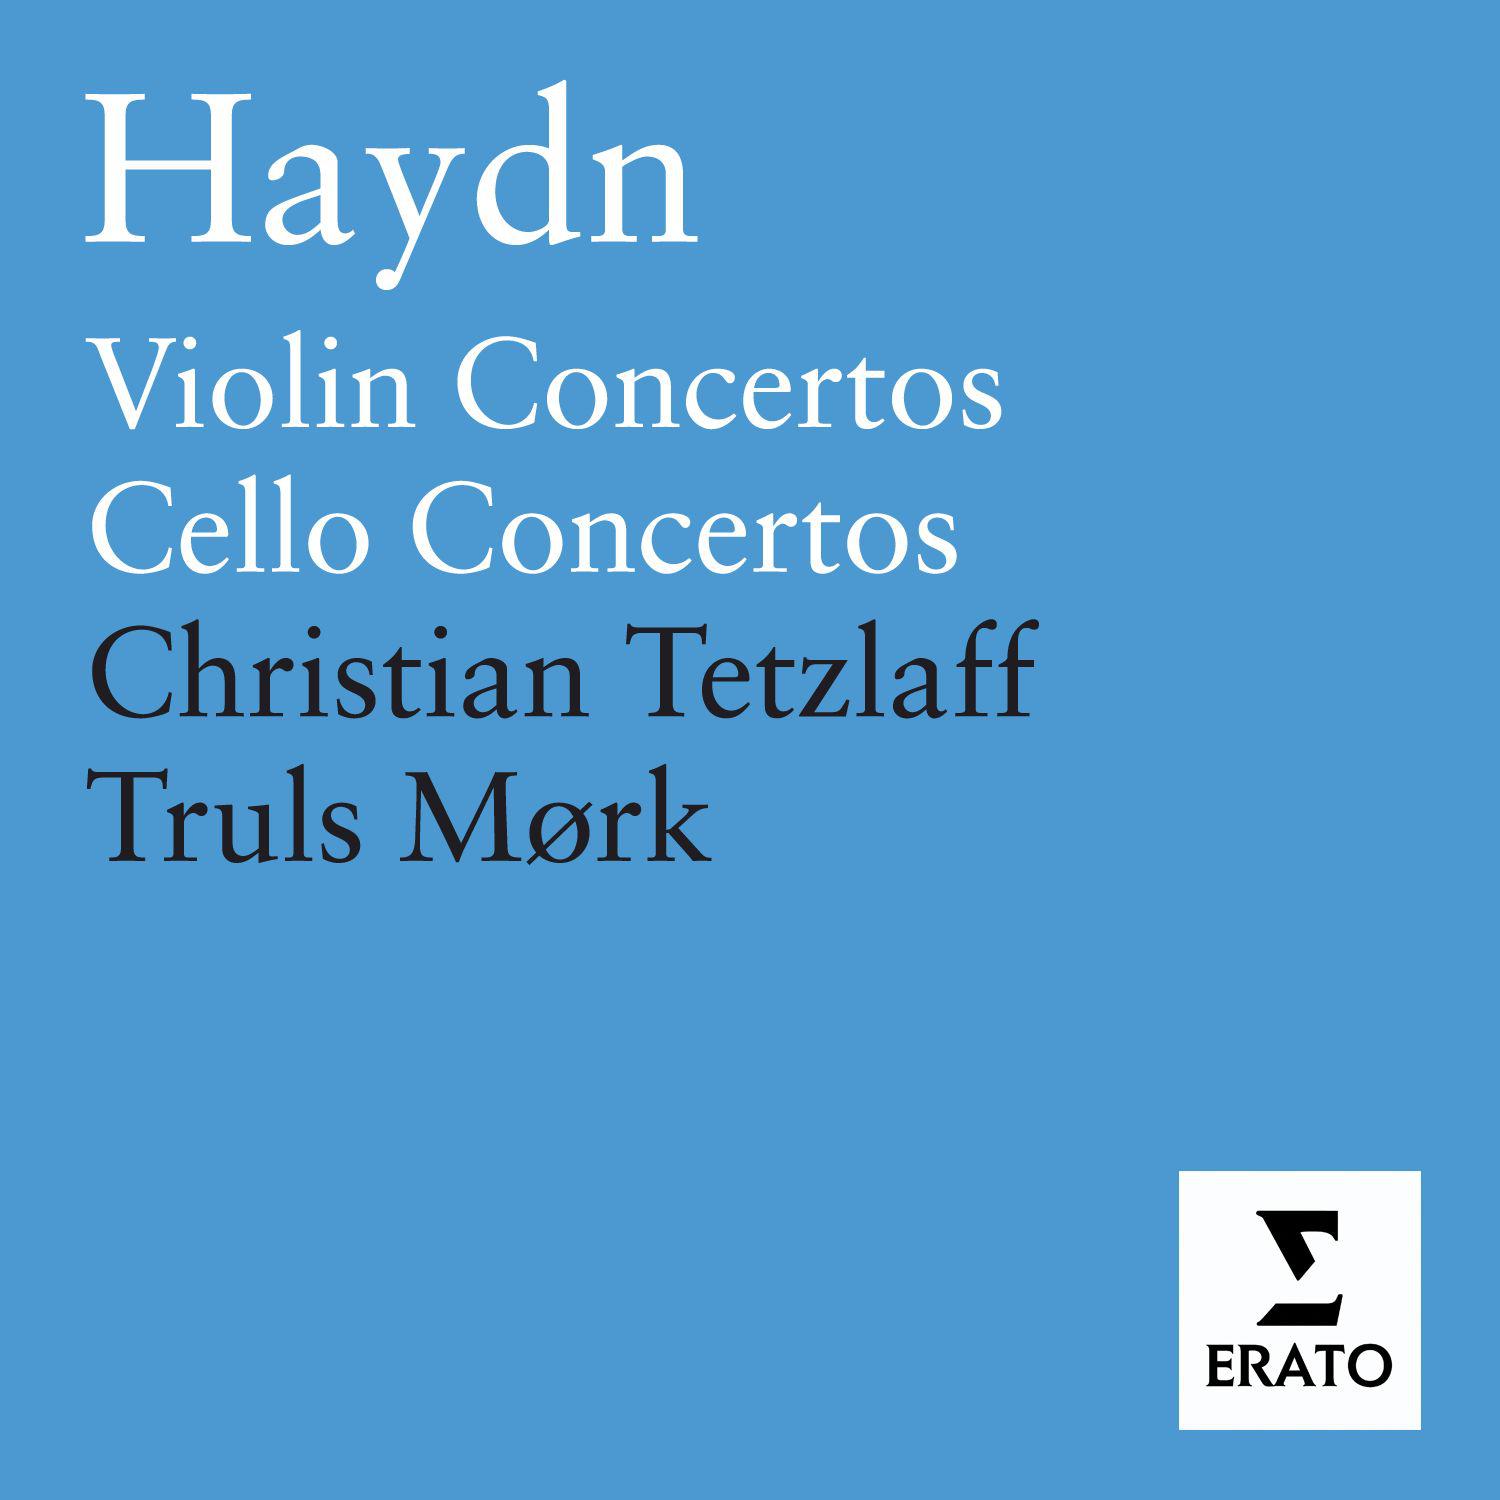 Violin Concerto in A Major, Hob. VIIa/3: I. Moderato